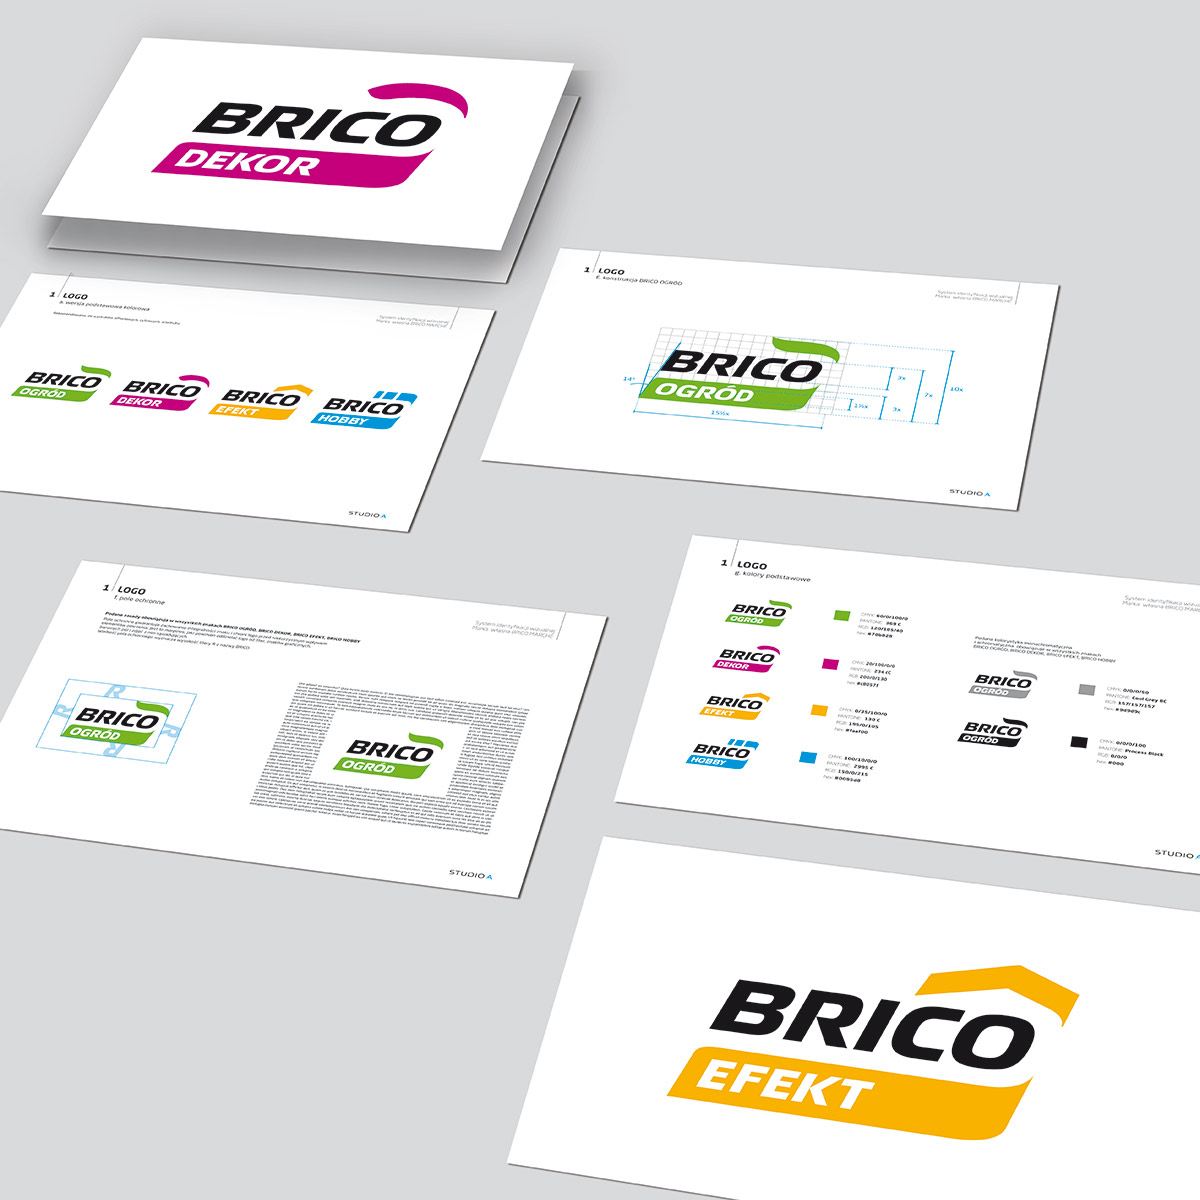 Brico-marche_SIW_Studio_A